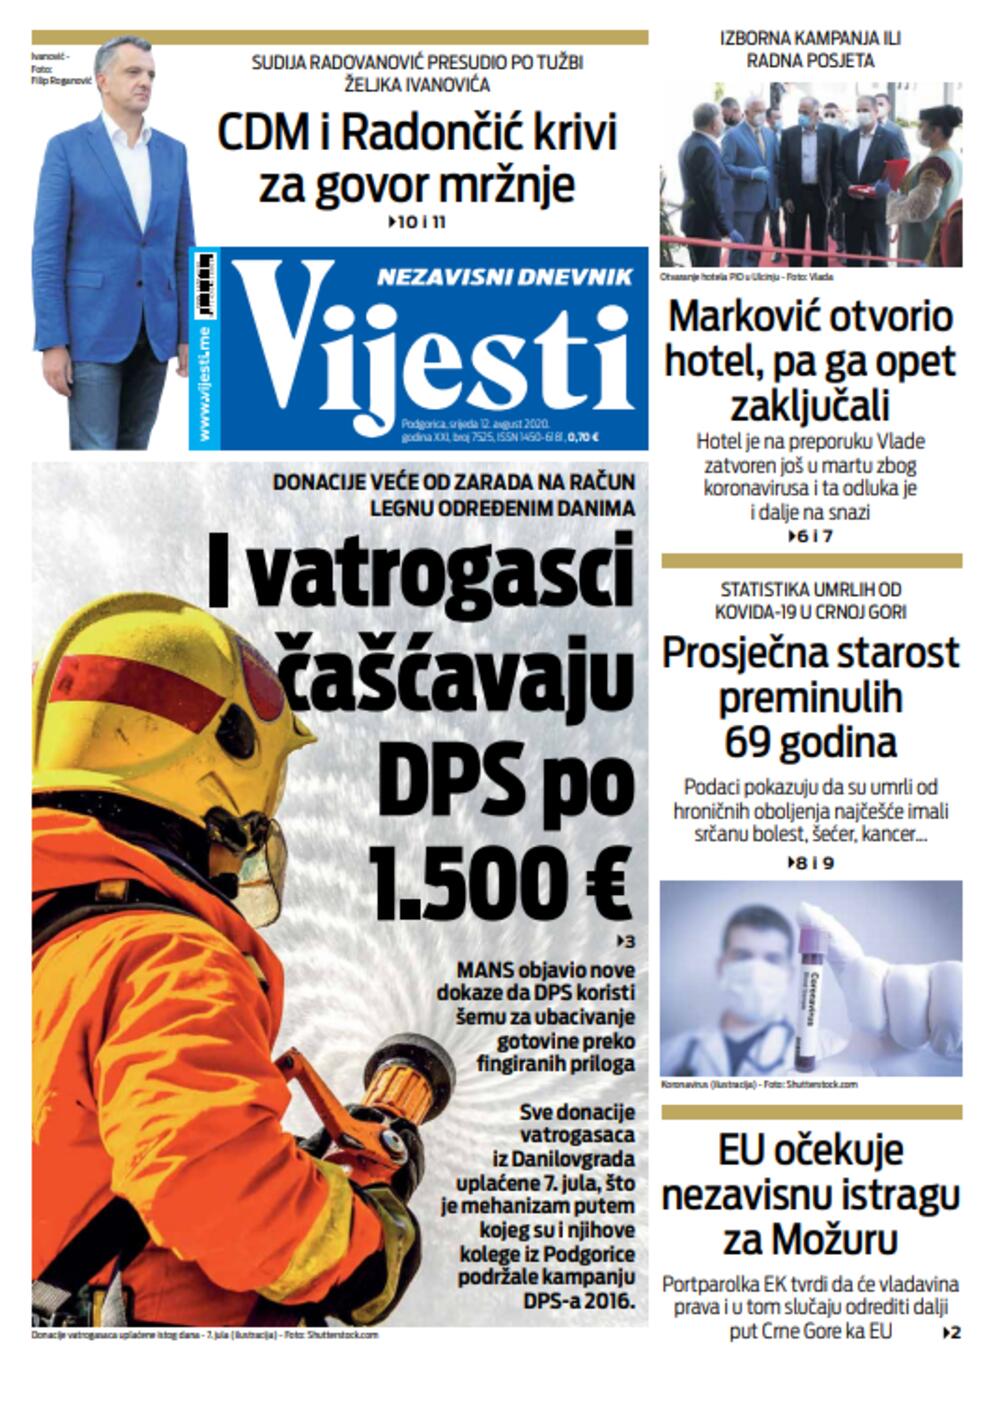 Naslovna starana "Vijesti" za 12. avgust, Foto: Vijesti